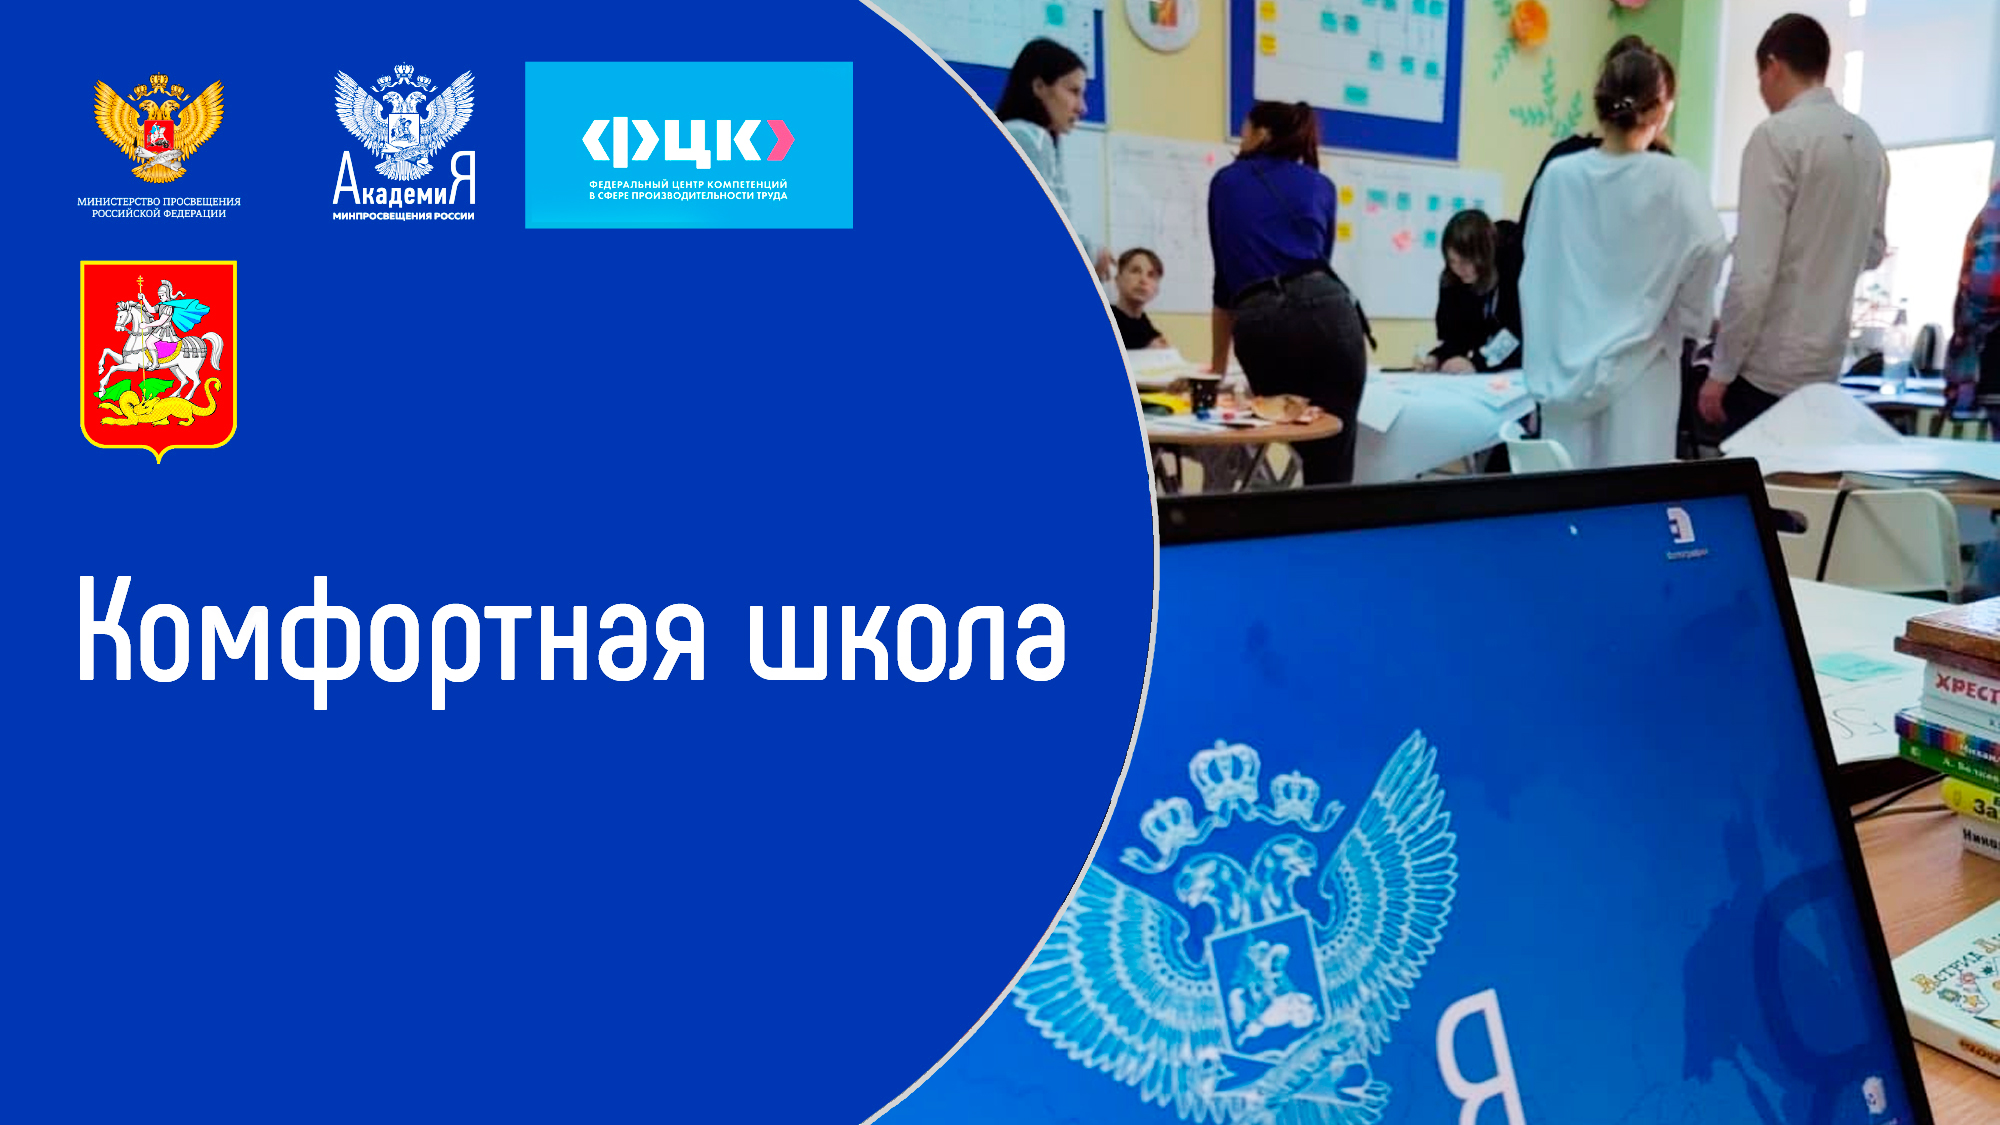 Академия Минпросвещения России 21 октября проведет информационно-просветительский вебинар в рамках проекта «Комфортная школа»